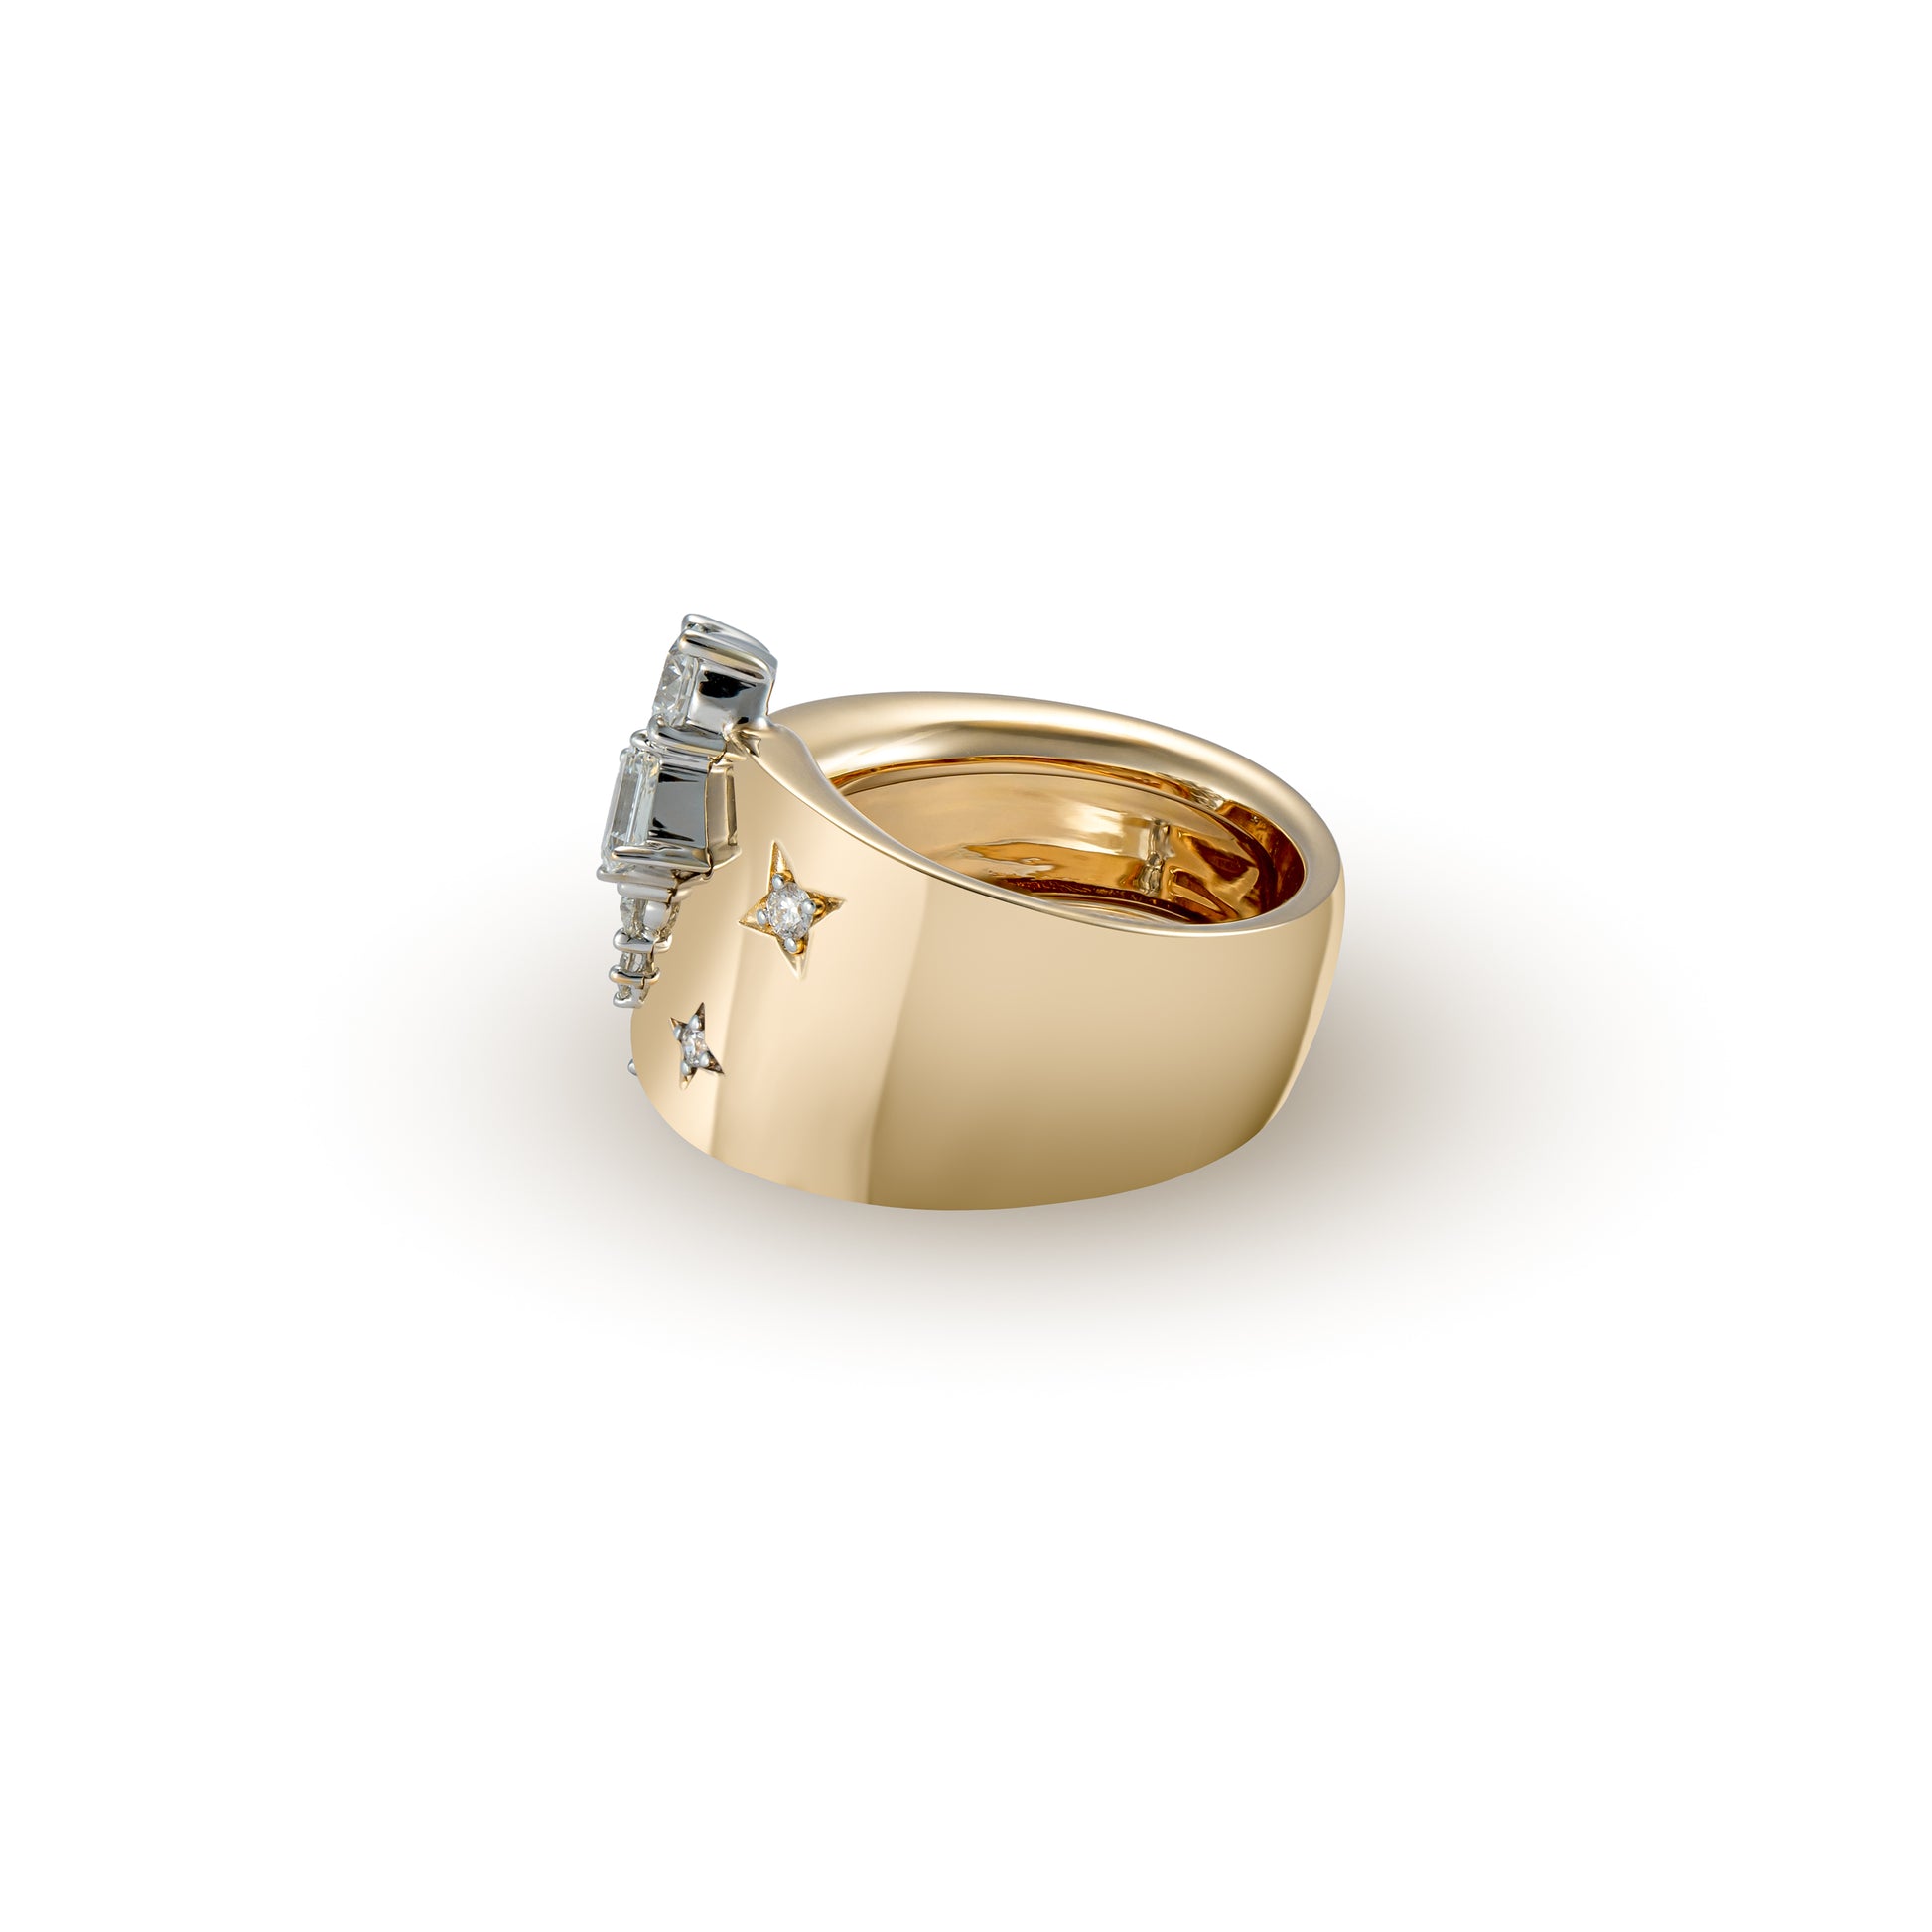 18K White & Rose Gold, Fancy Shape Diamond Ring - K.S. Sze & Sons